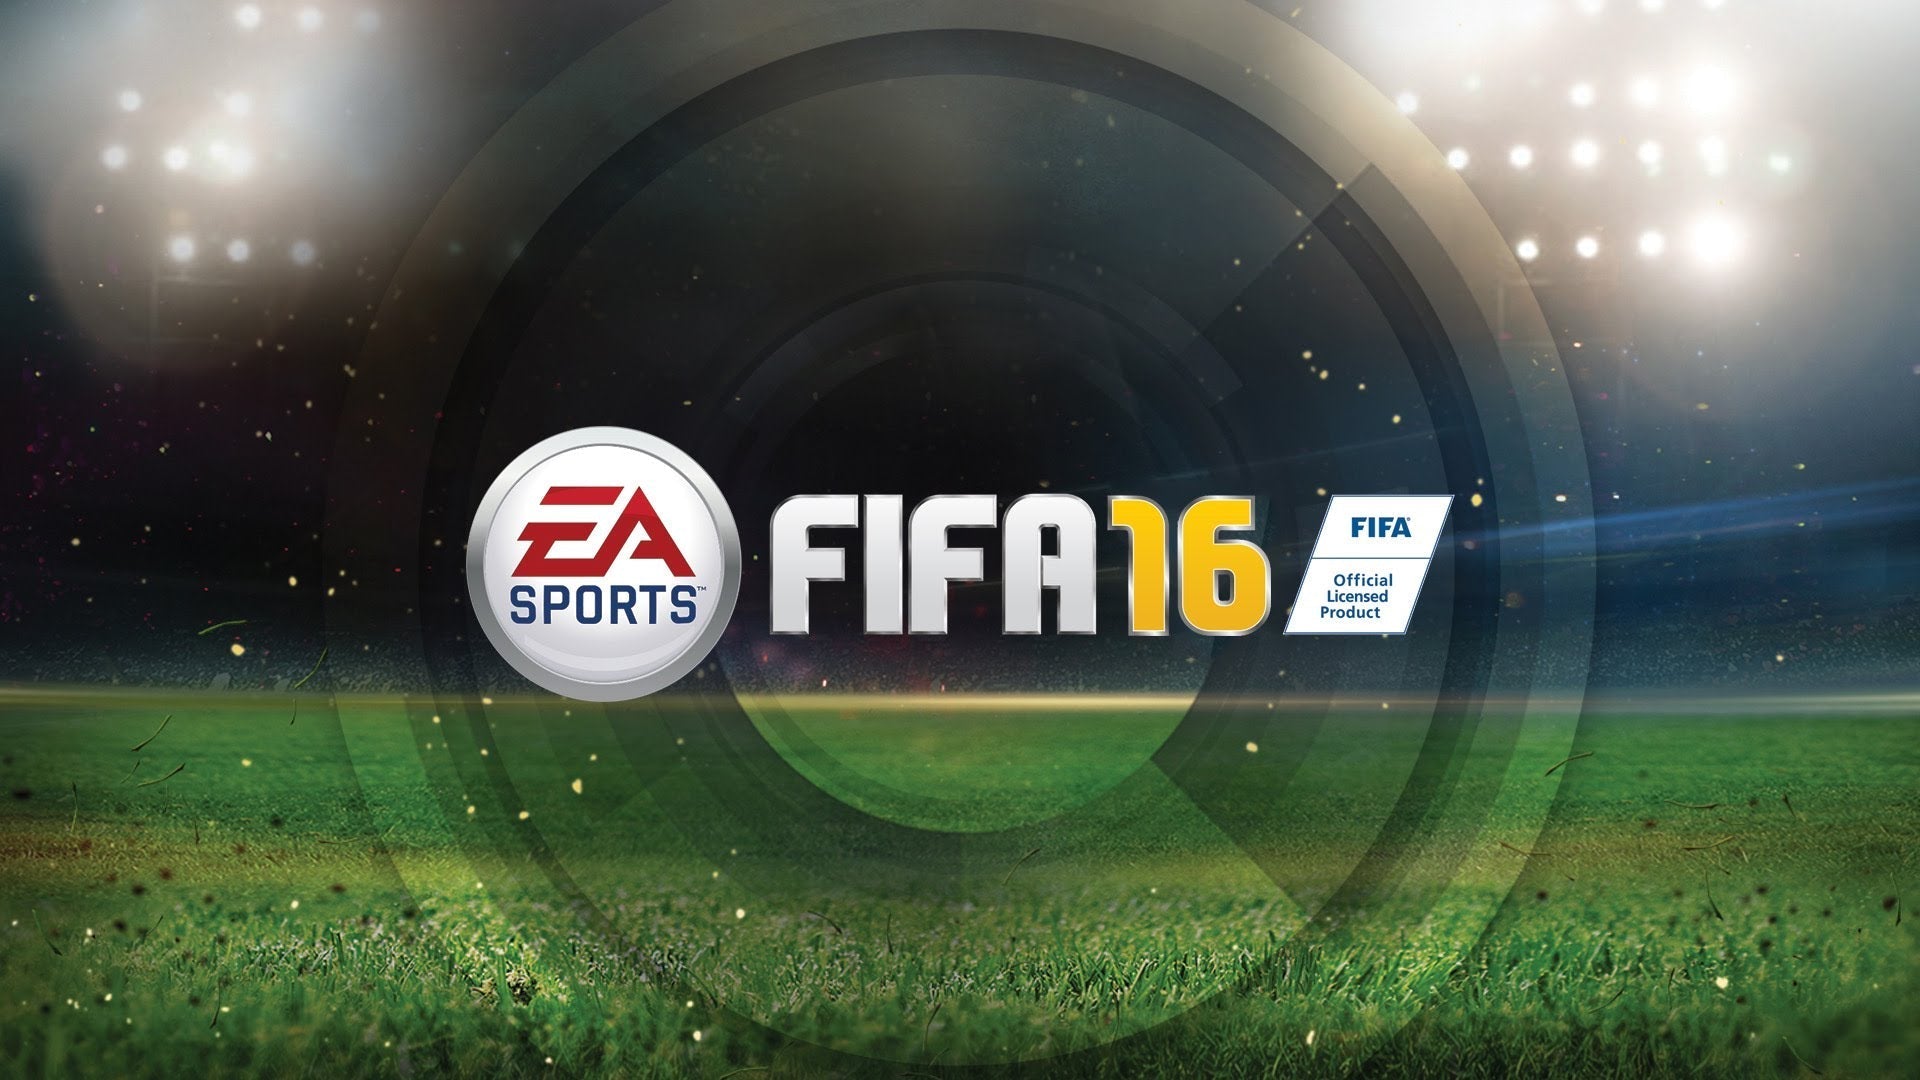 FIFA 16 - PlayStation 3 (PS3) Game